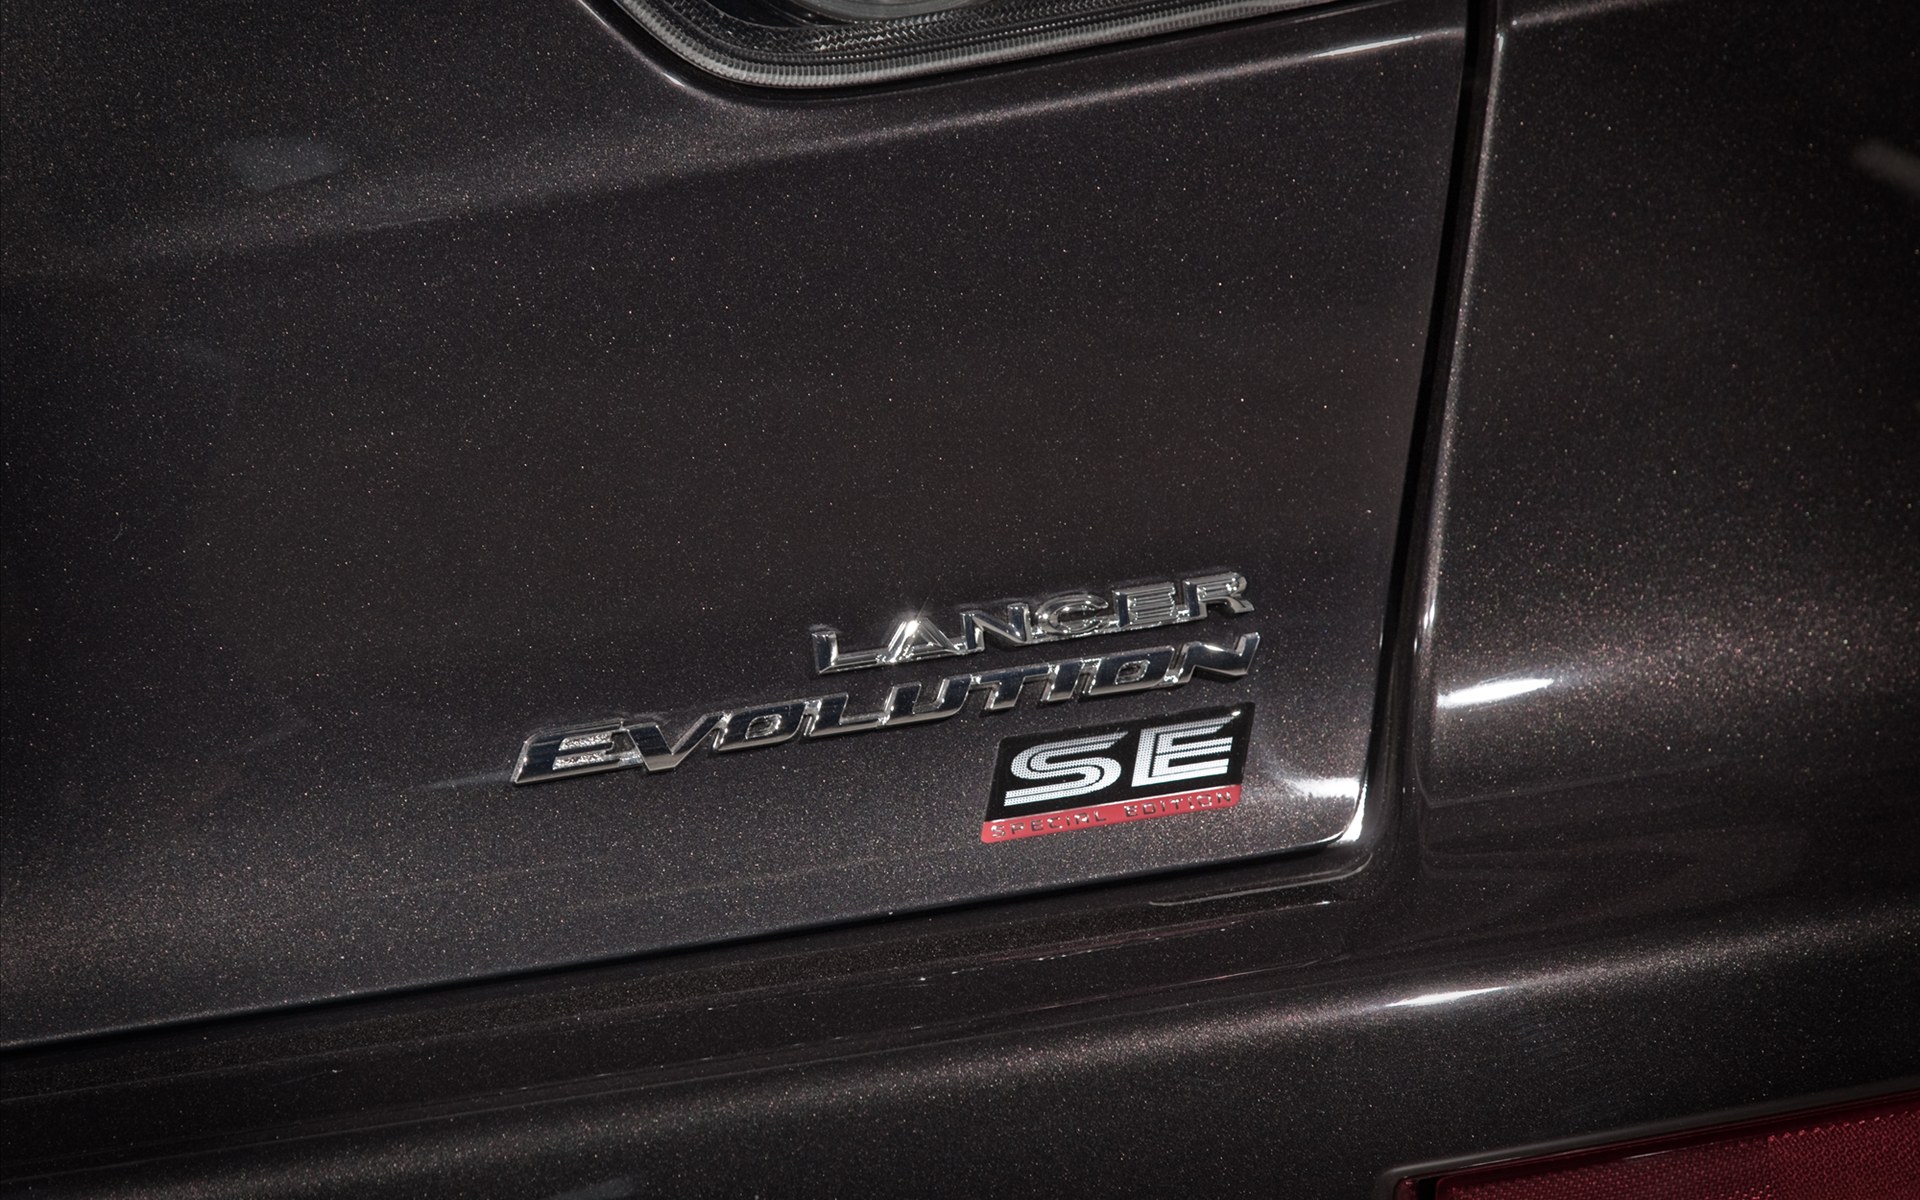 Mitsubishi Lancer Evolution SEܳ 2010(ֽ12)